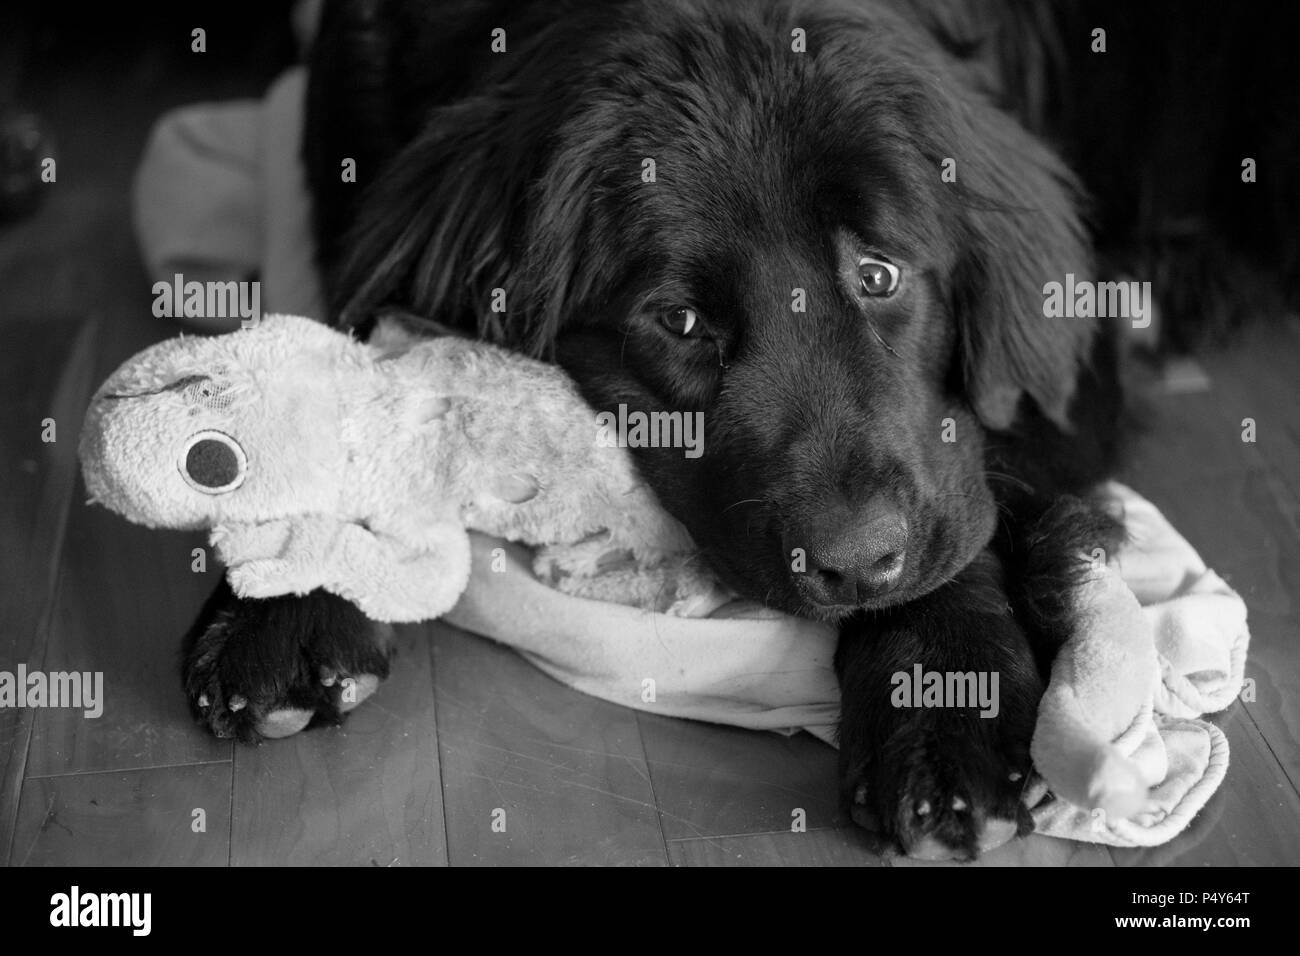 Black & White image of sad dog cuddling ragged toy Stock Photo